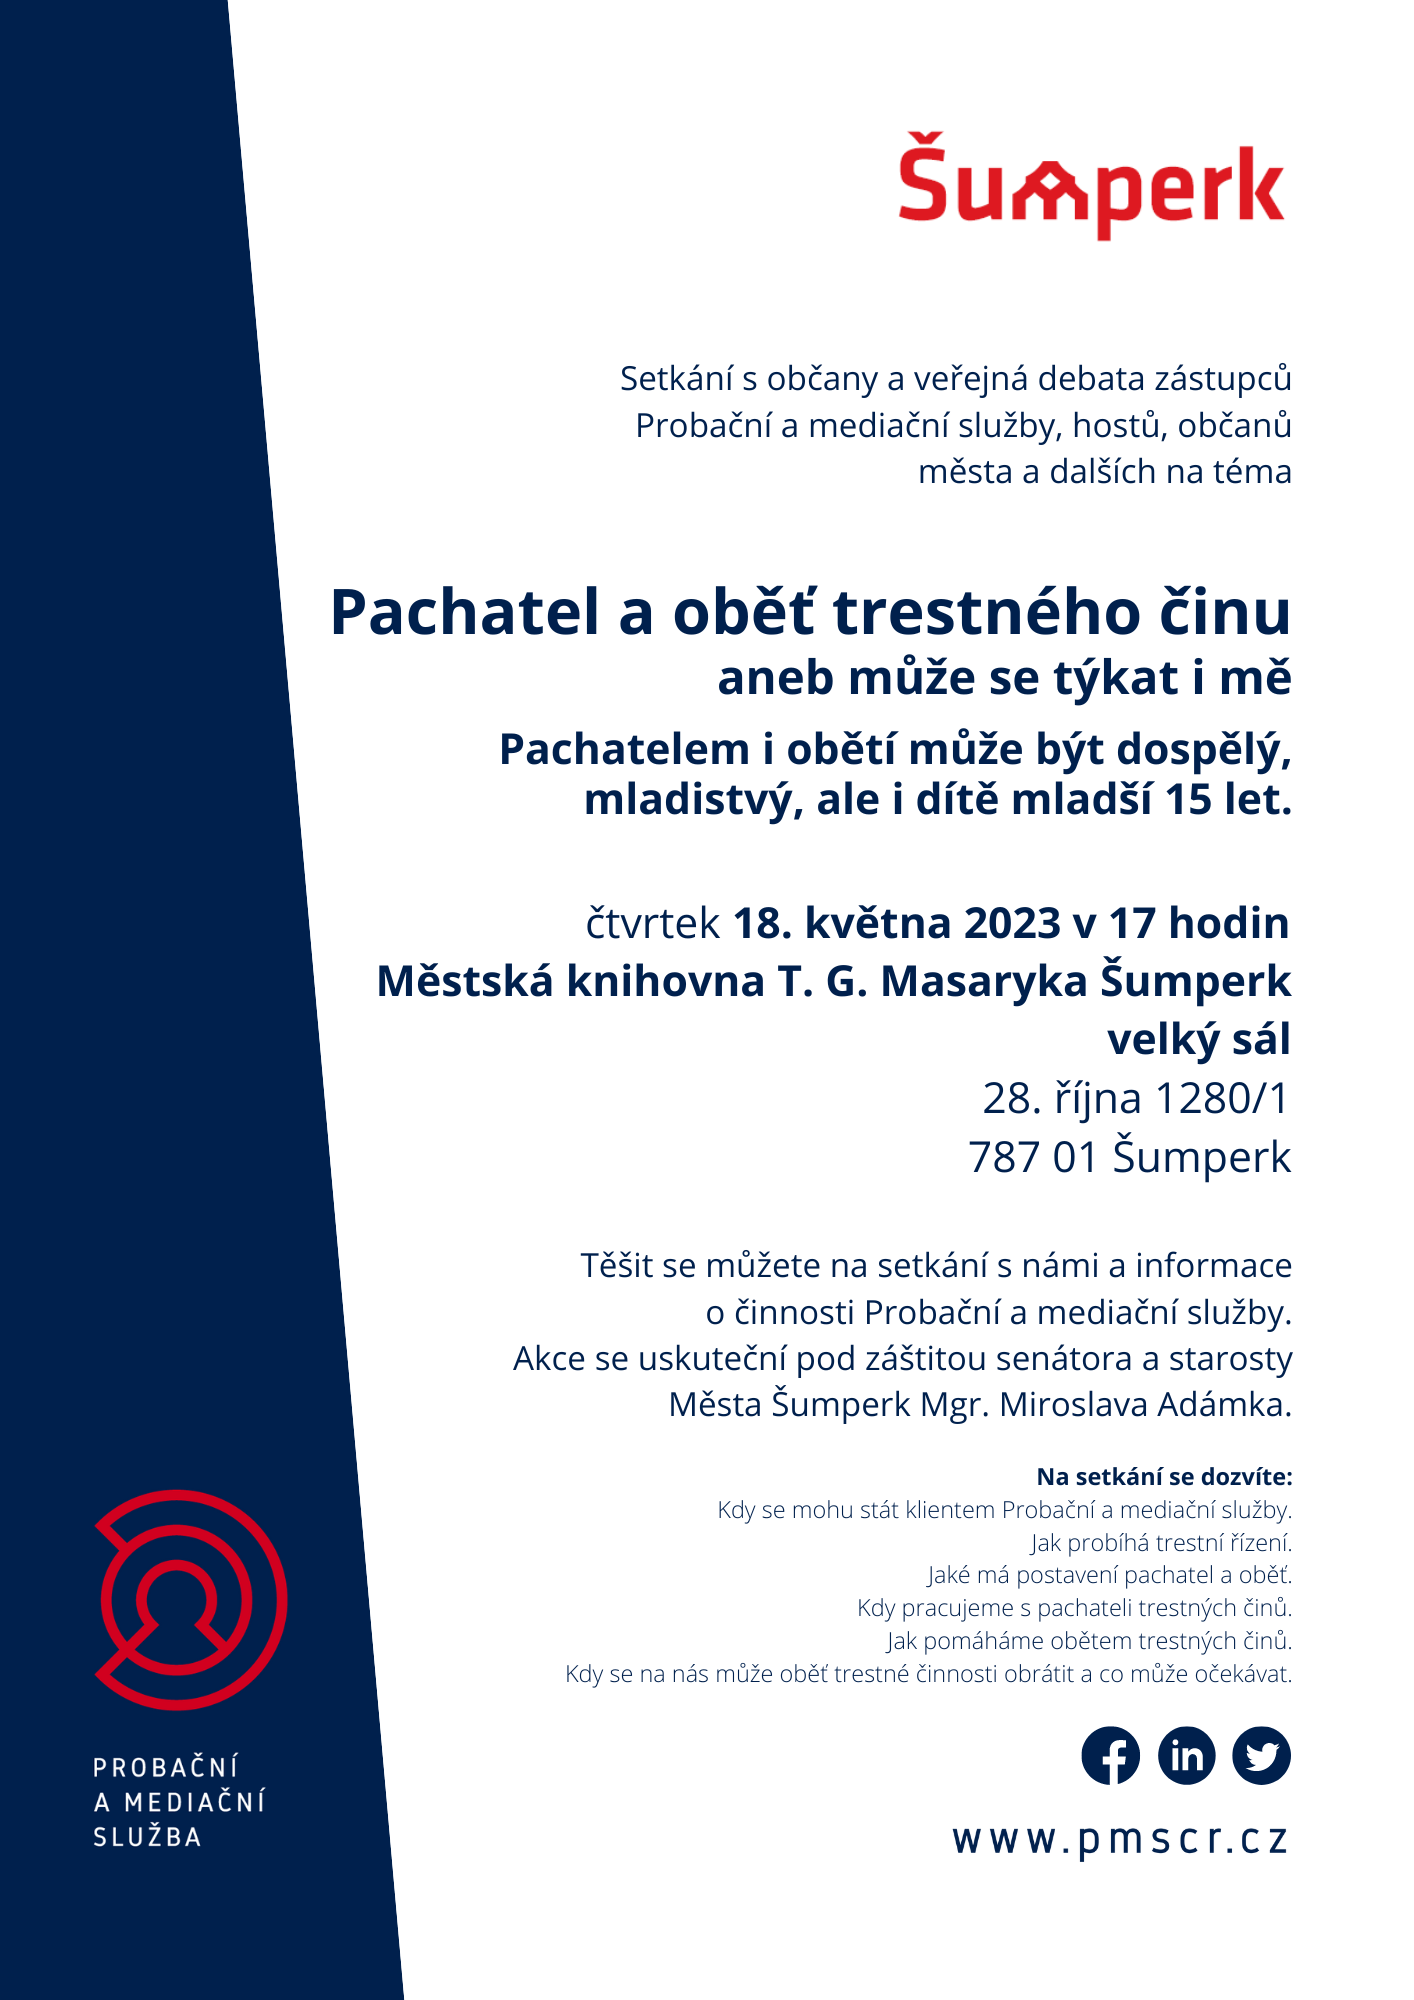 Plakát akce Pachatel a oběť trestného činu aneb může se to týkat i mě pořádaný Probační a mediační službou Šumperk